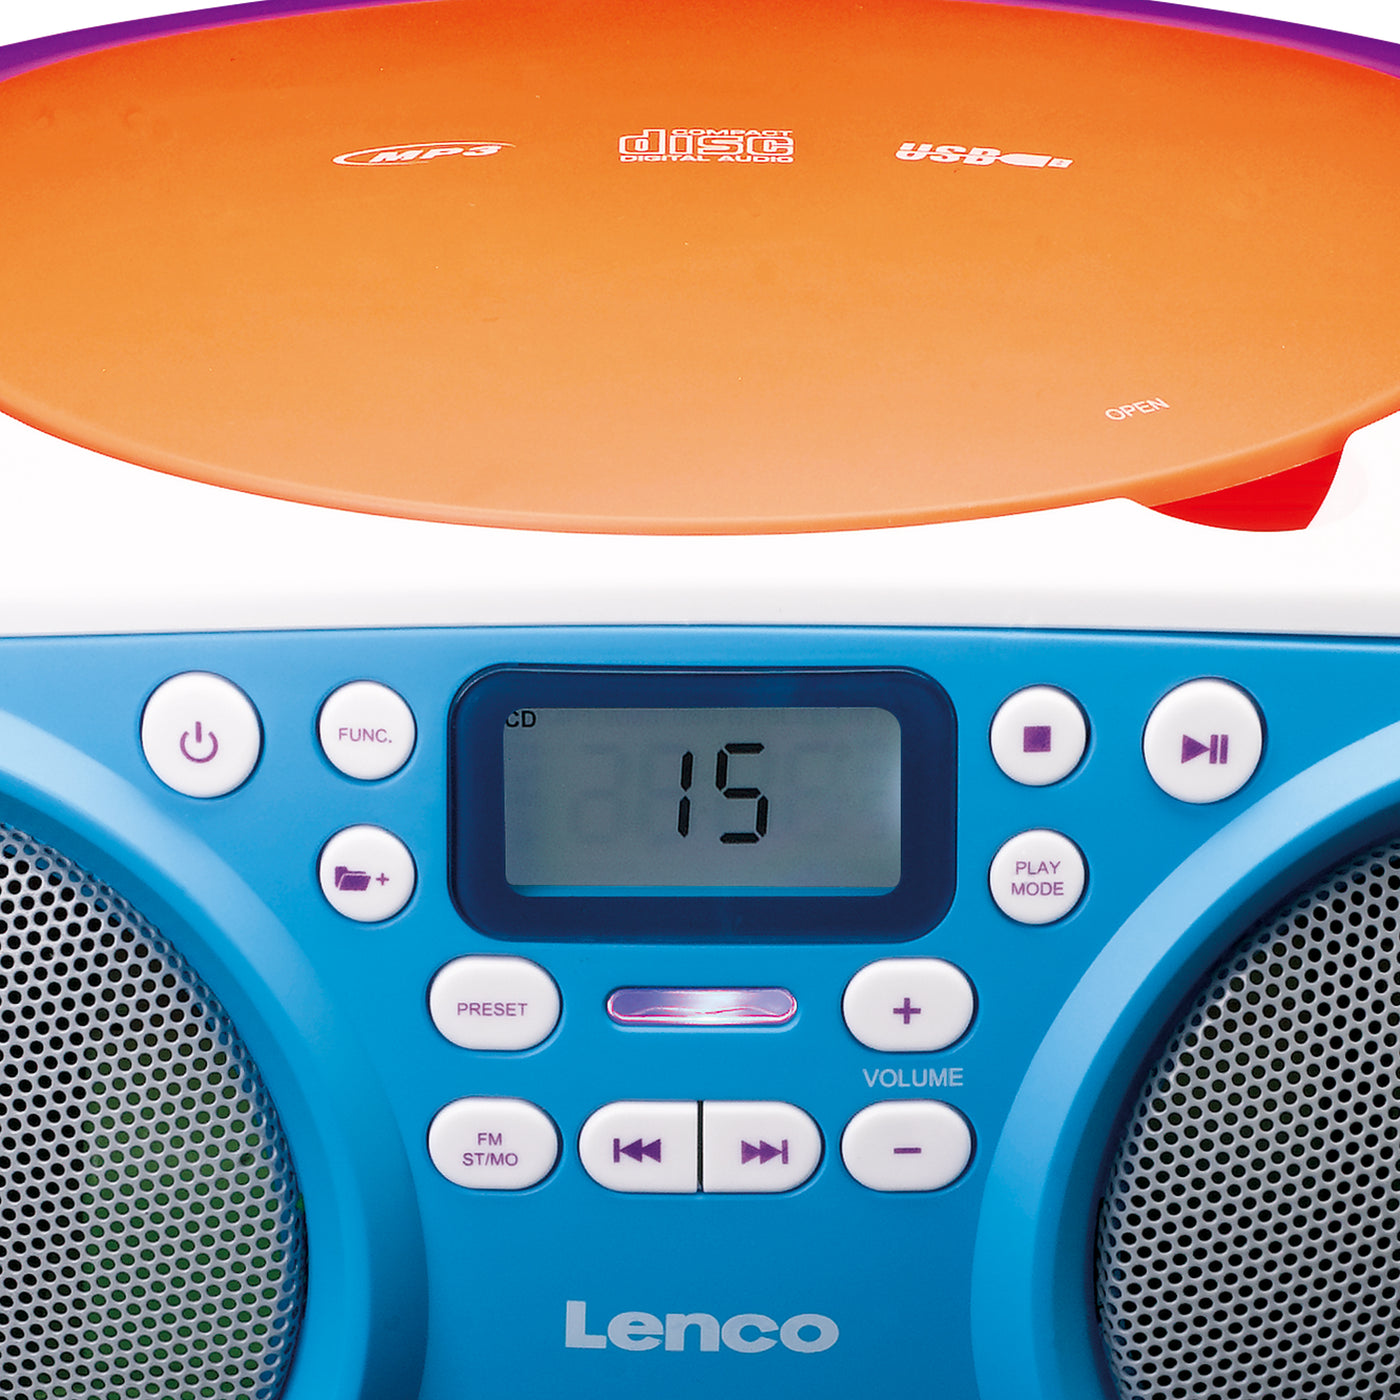 Lenco SCD-41 - Radio FM portable Lecteur CD/USB - Multicolore